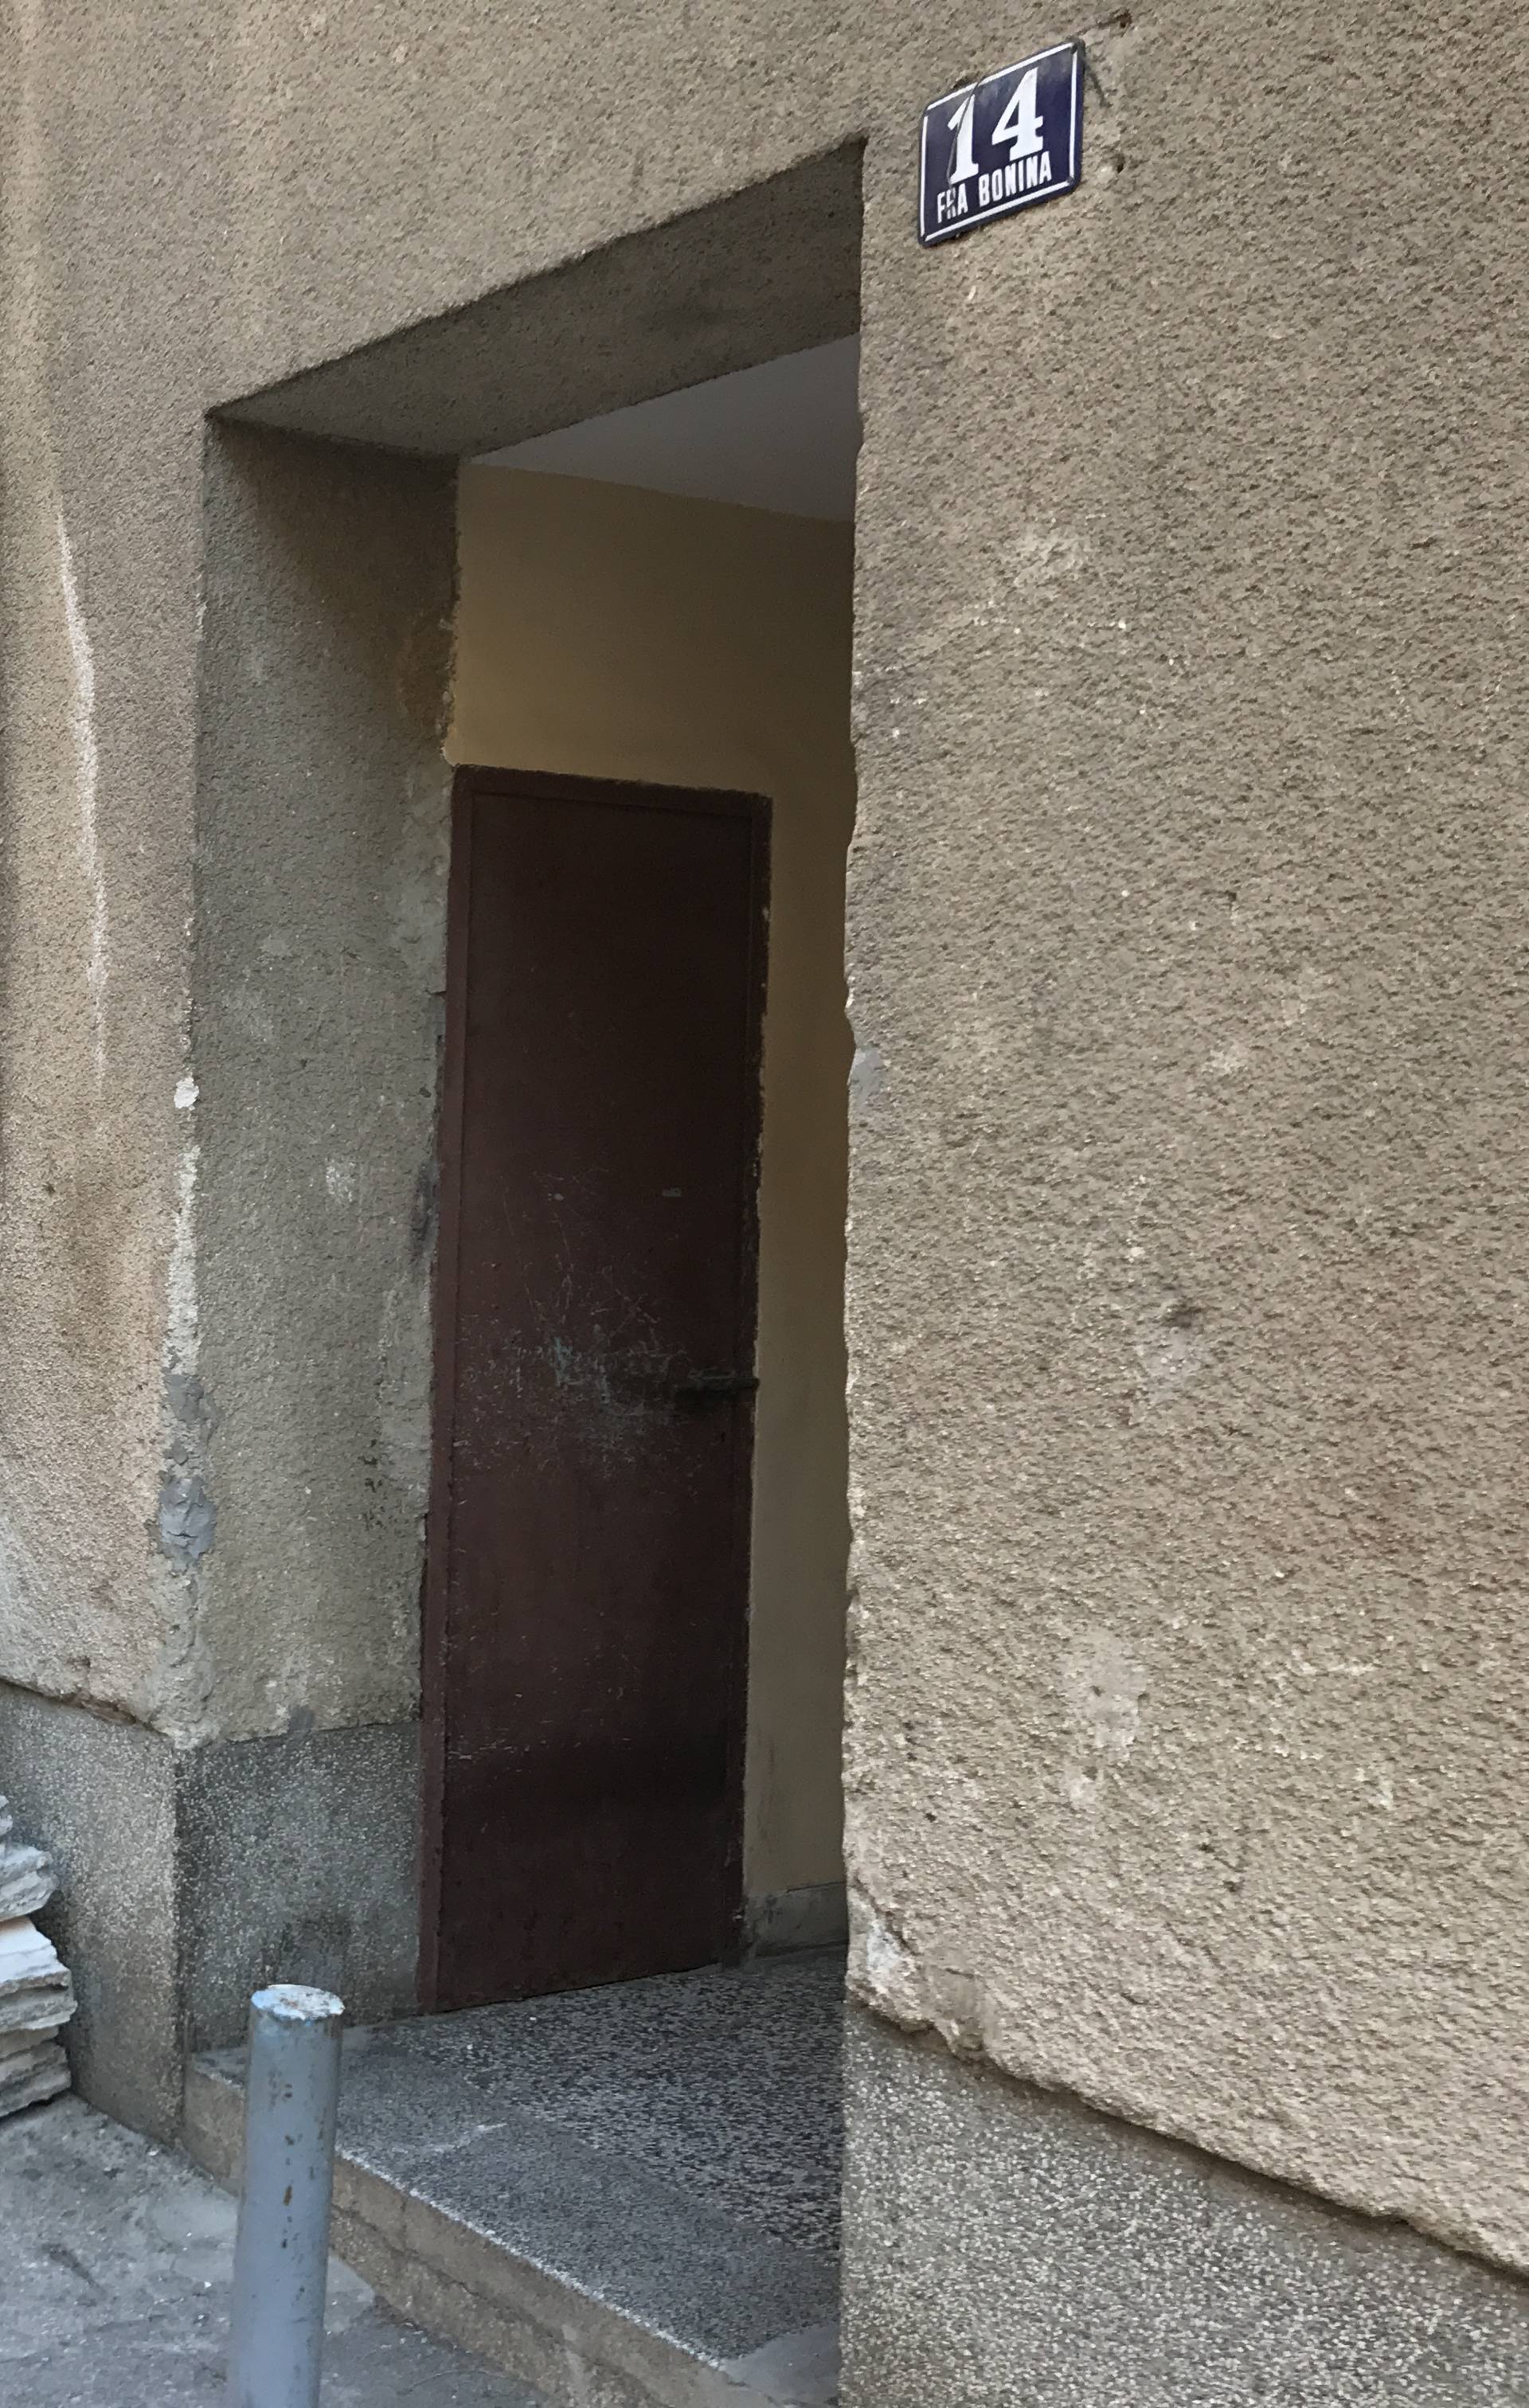 Splićanin radio kemijski pokus u stanu: U eksploziji urušio zid